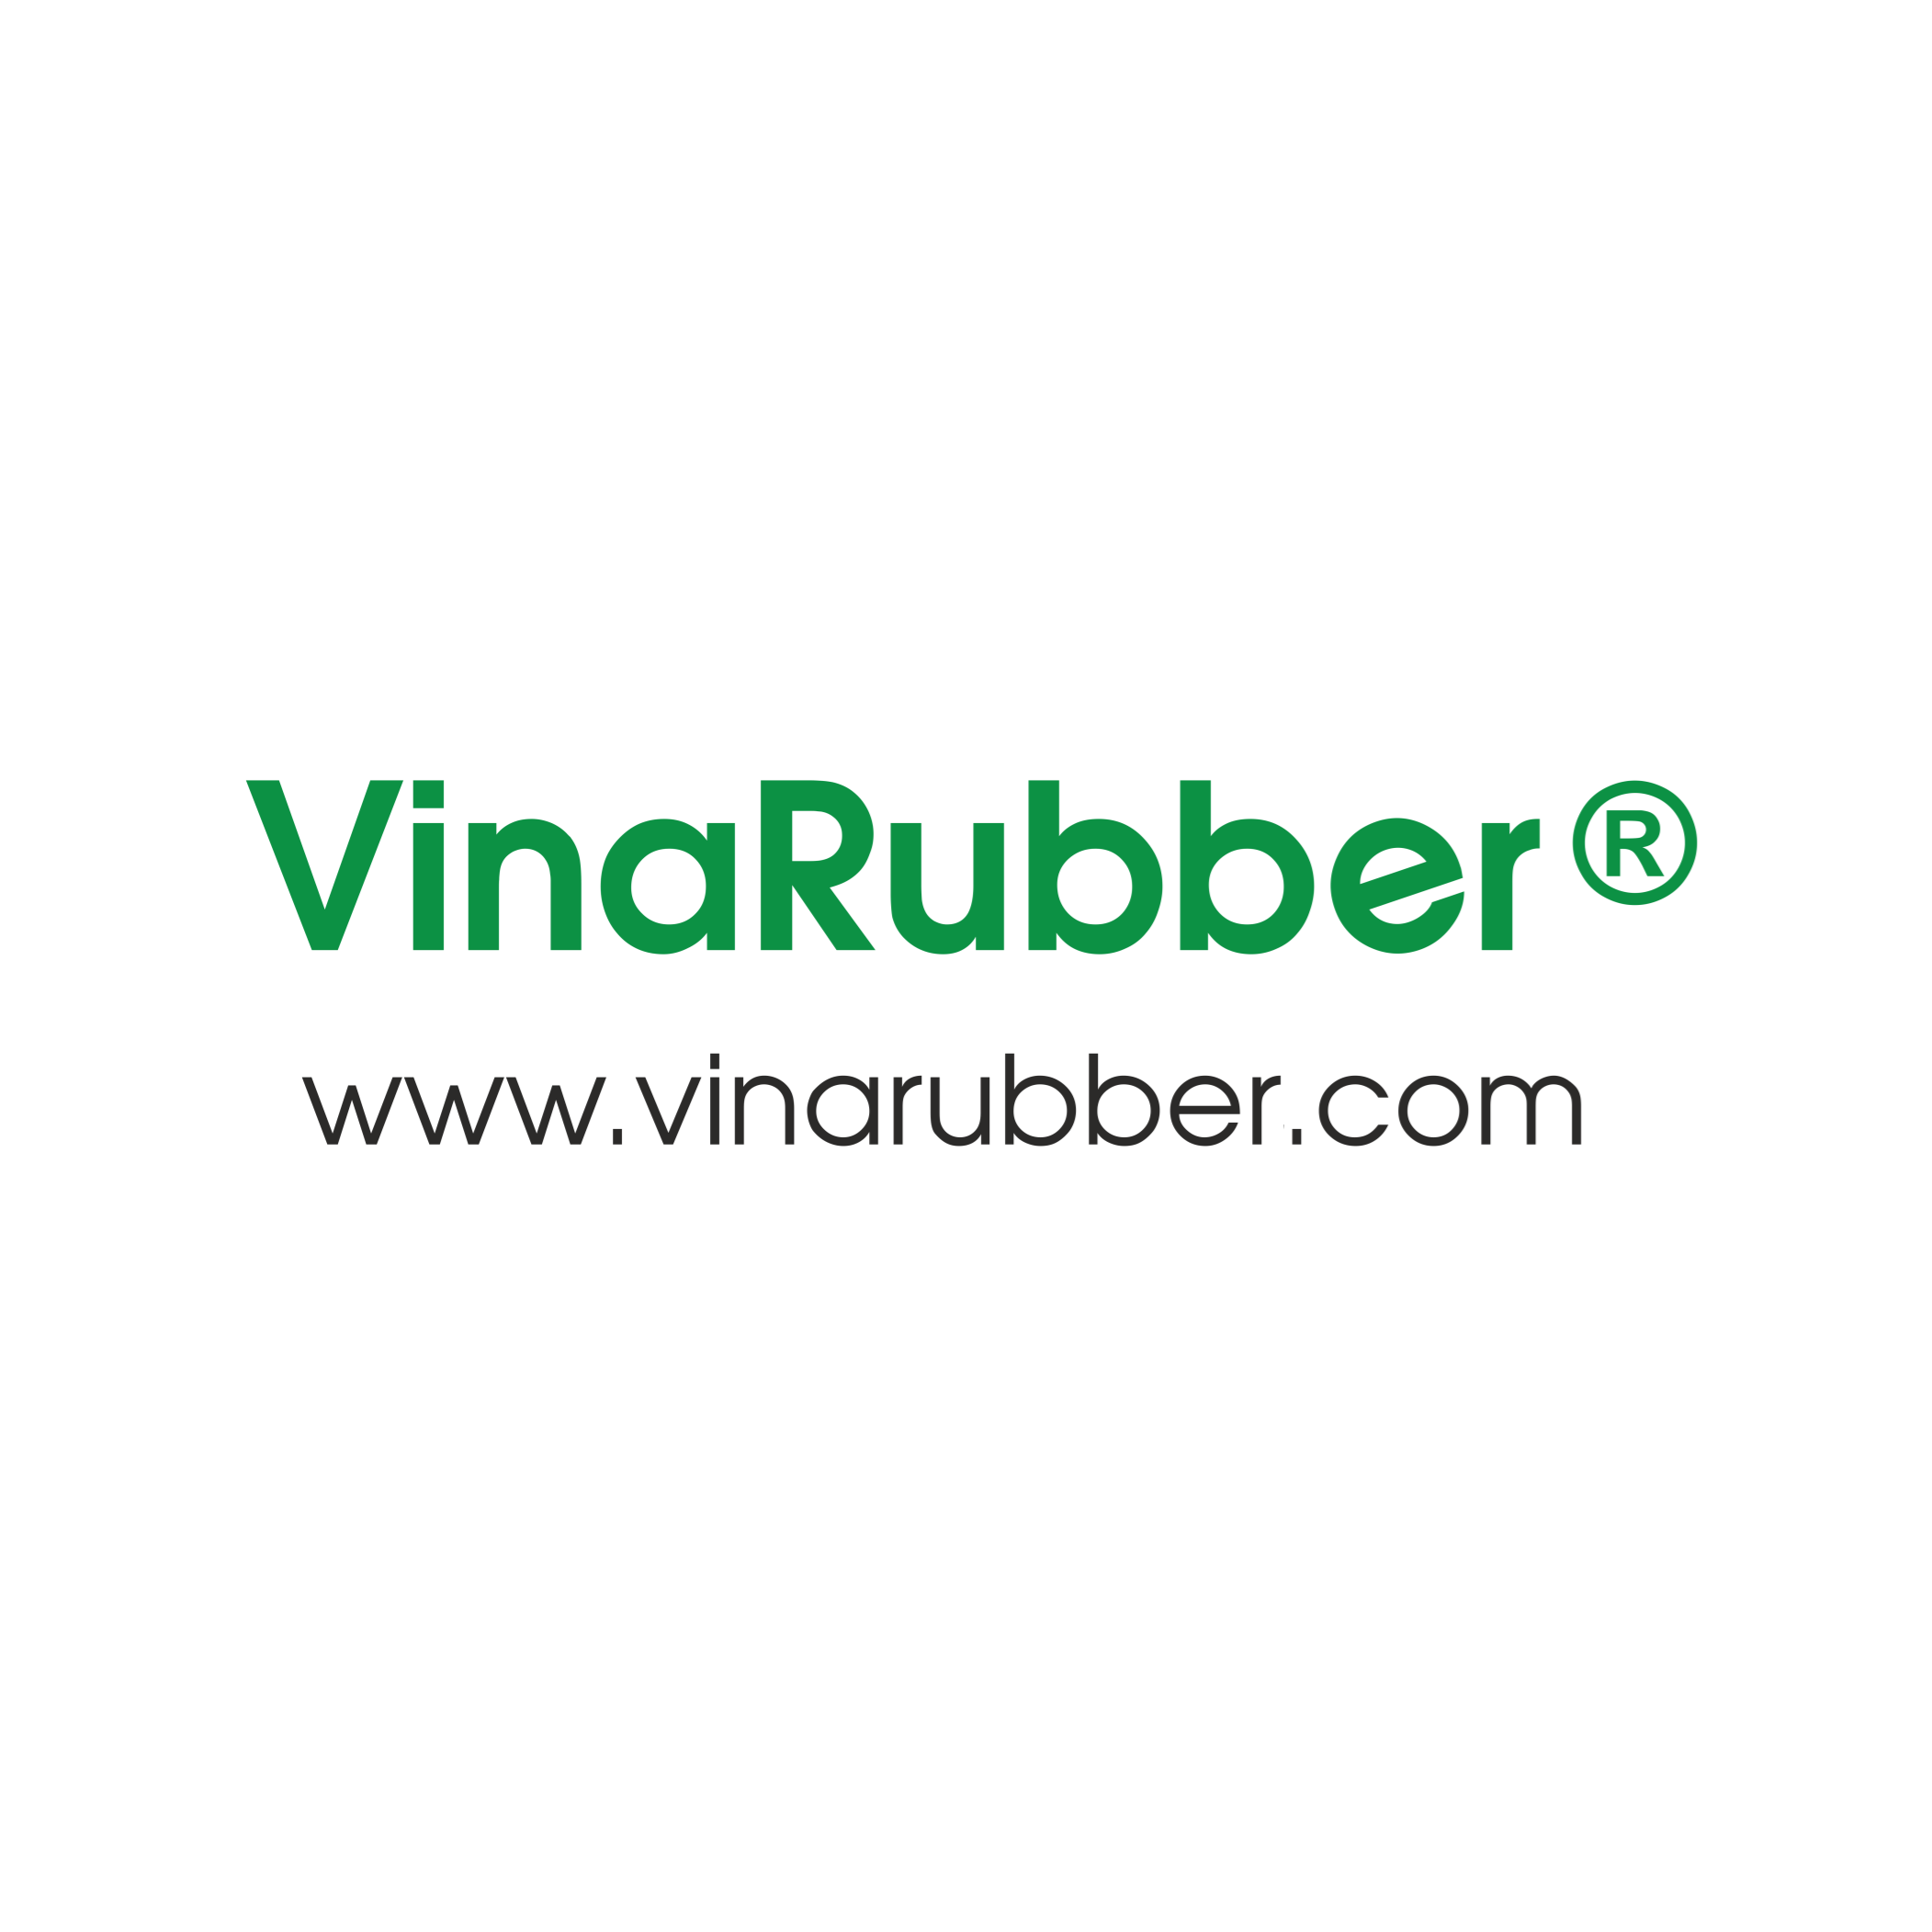 VinaRubber Co., Ltd